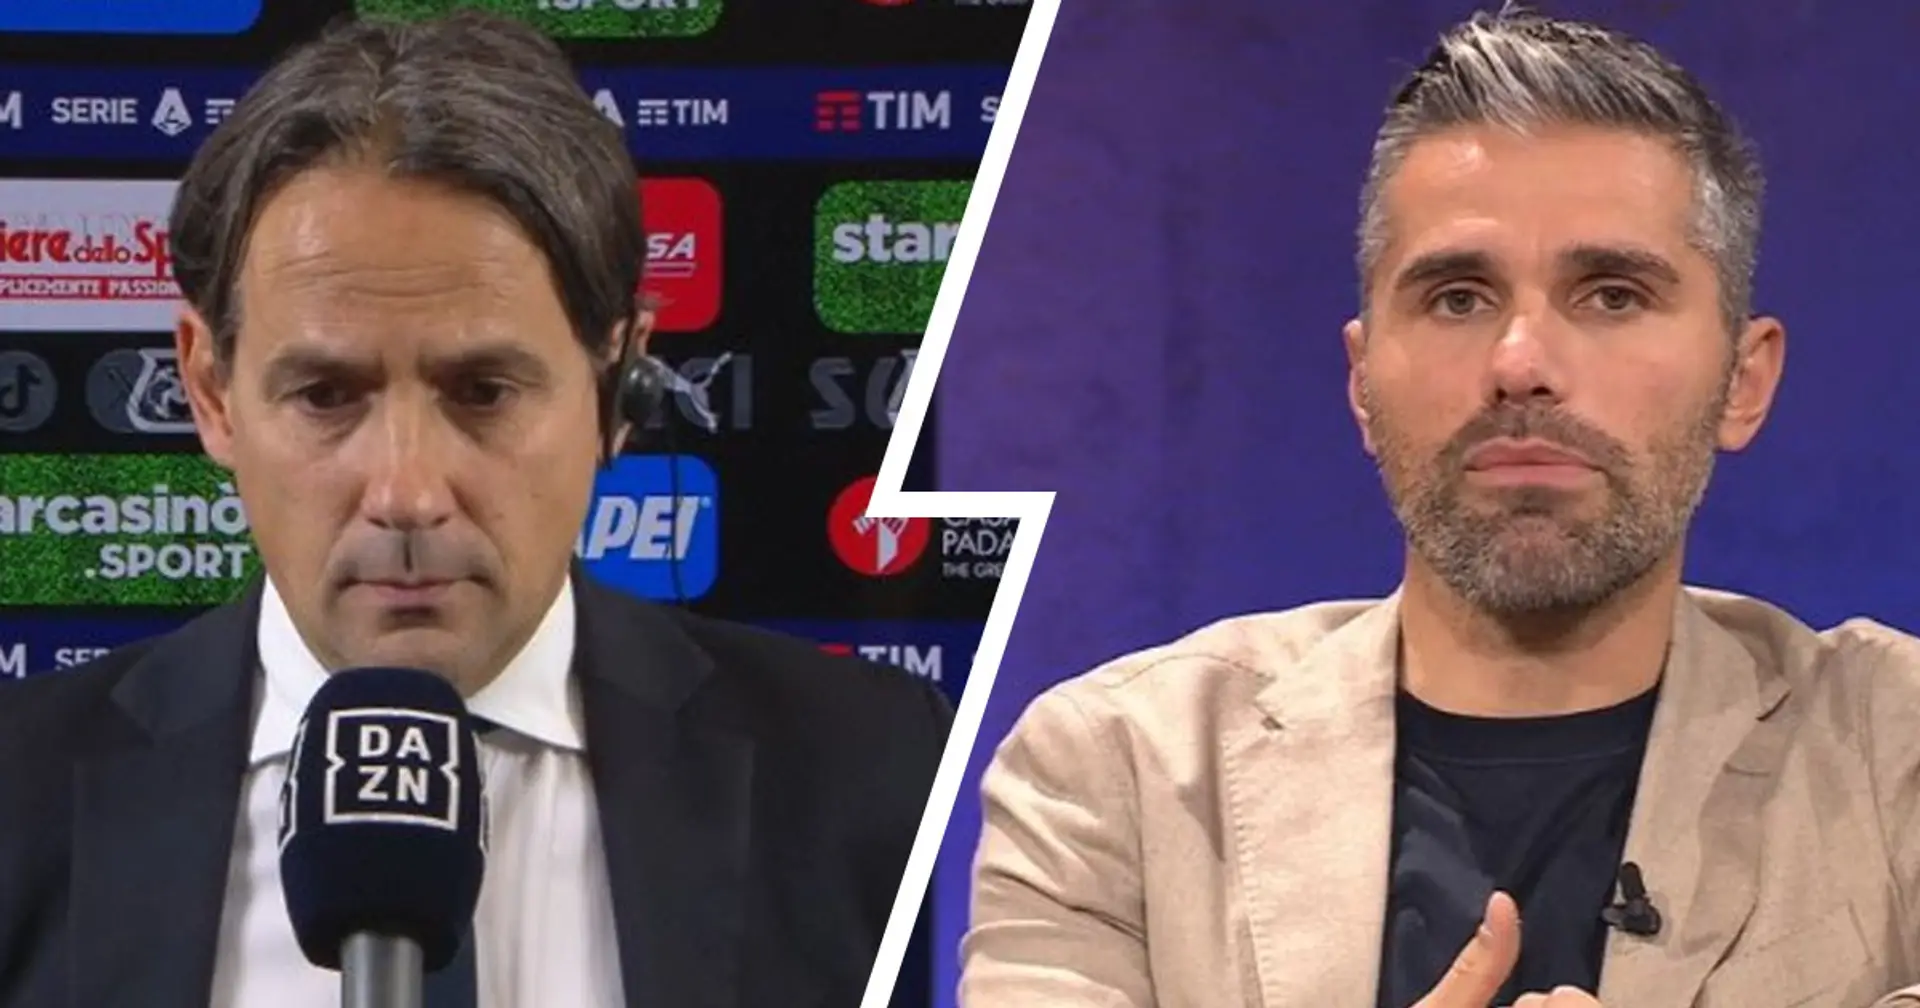 Inzaghi sgrida Behrami in TV: "Ti ho sentito che contestavi il nostro cammino in Champions", poi gli dà una lezione 